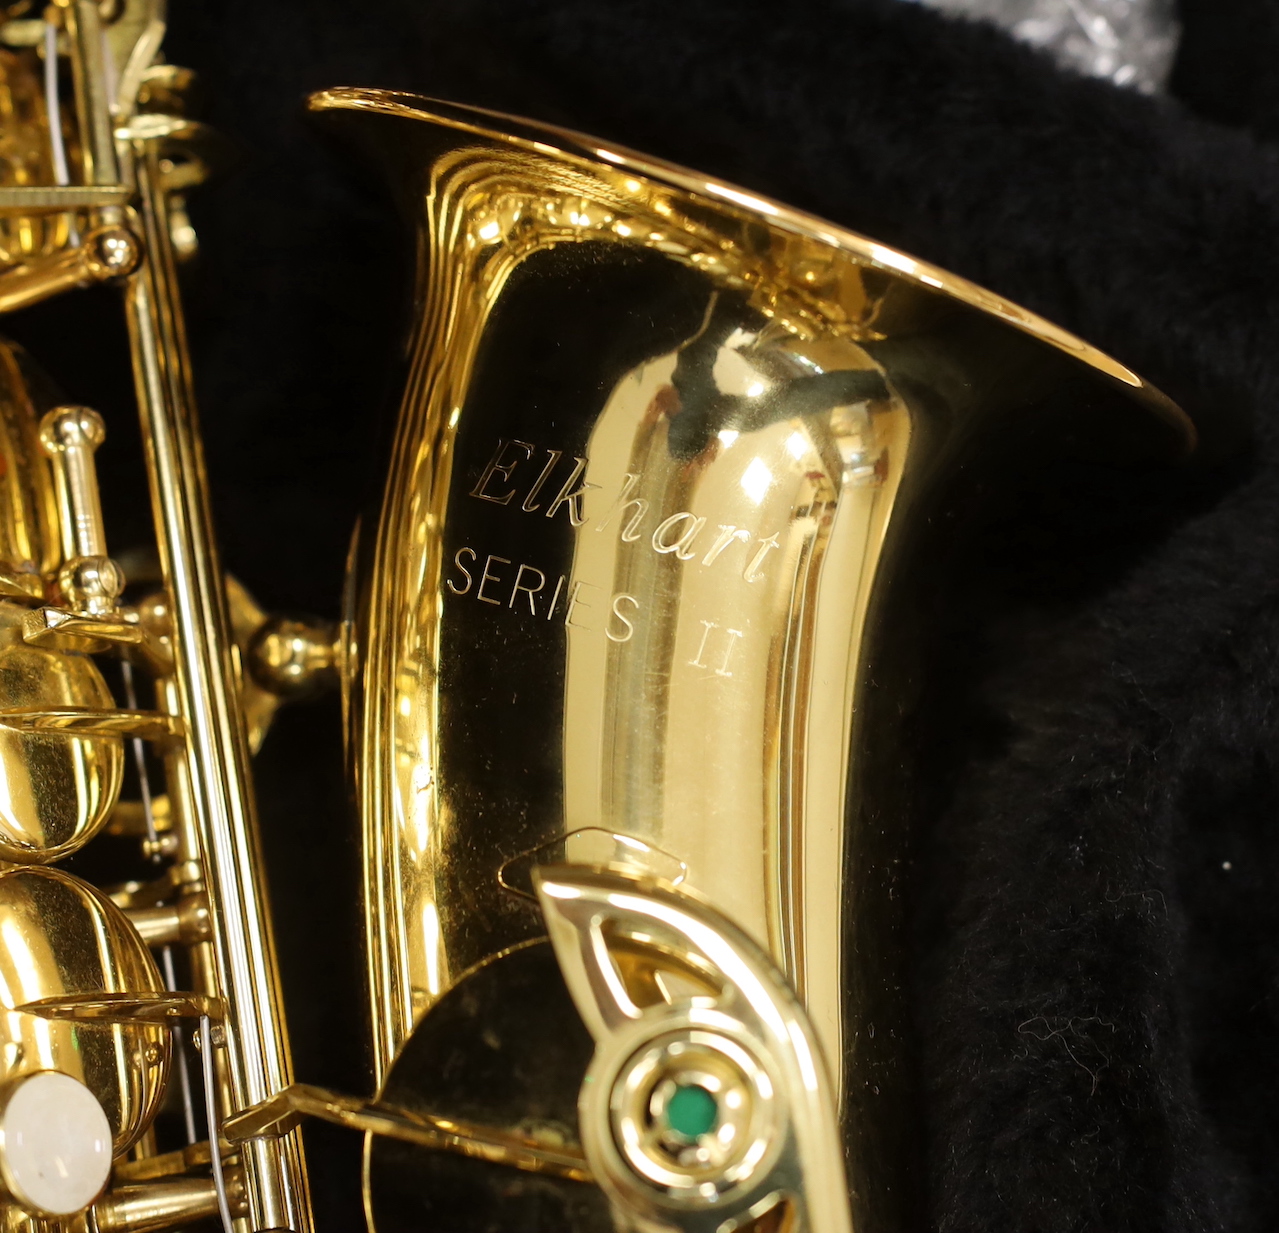 A cased saxophone, Elkhart